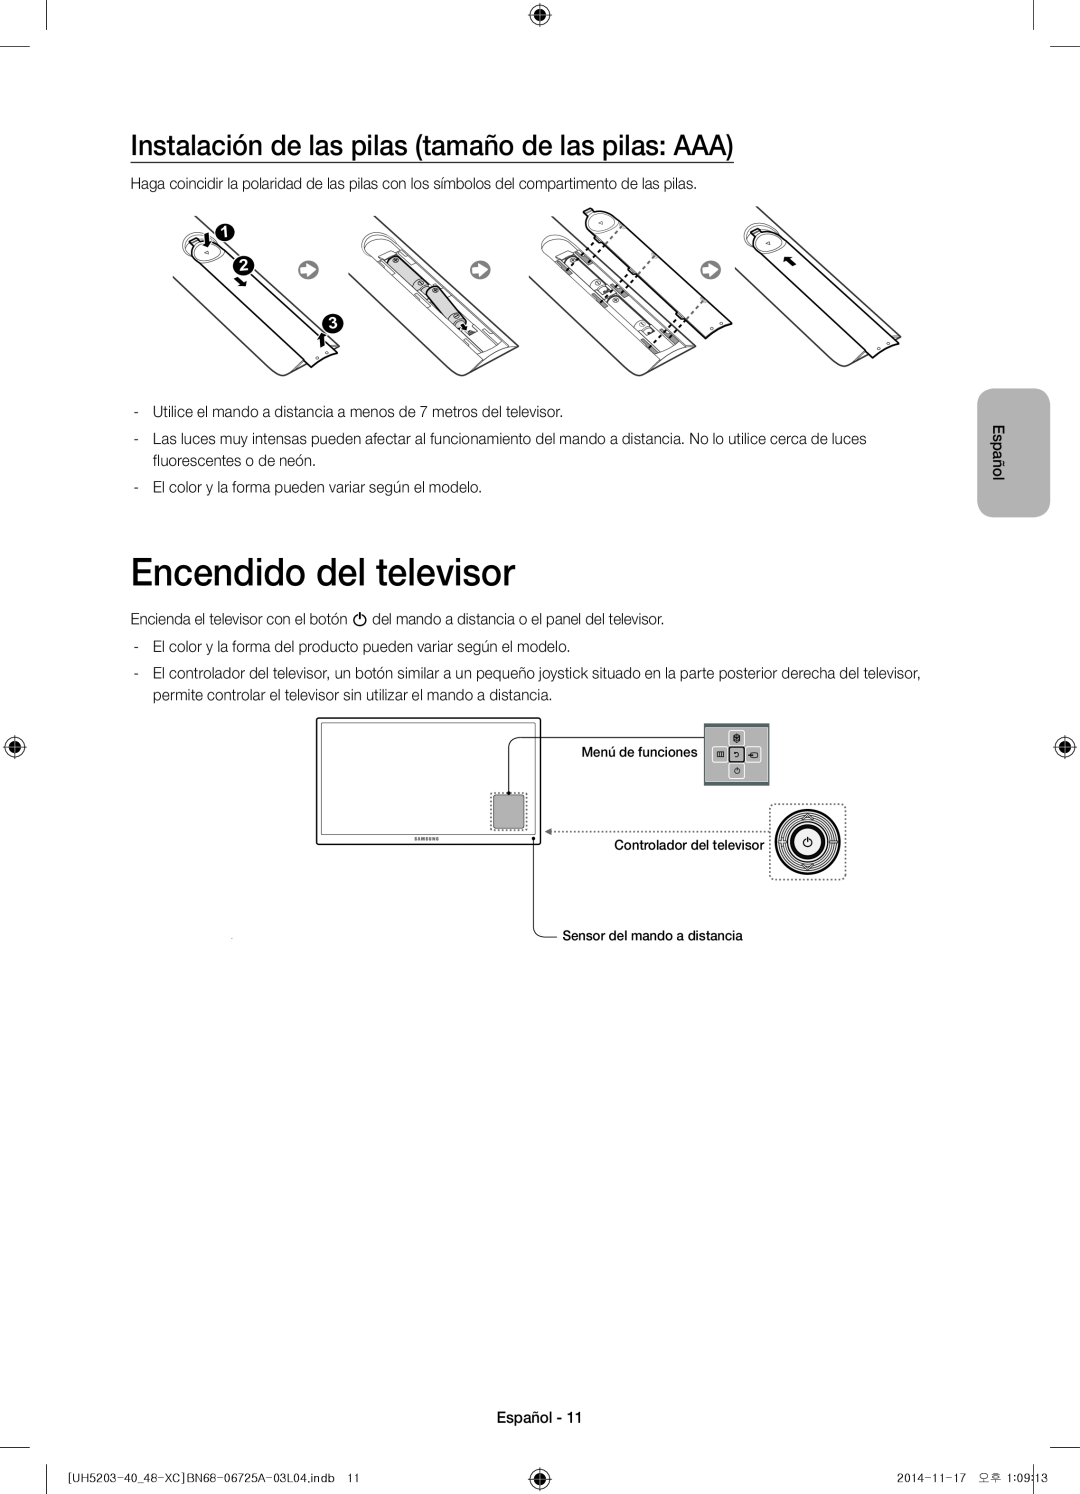 Samsung UE48H5203AWXXC, UE40H5203AWXXC manual Encendido del televisor, Instalación de las pilas tamaño de las pilas AAA 